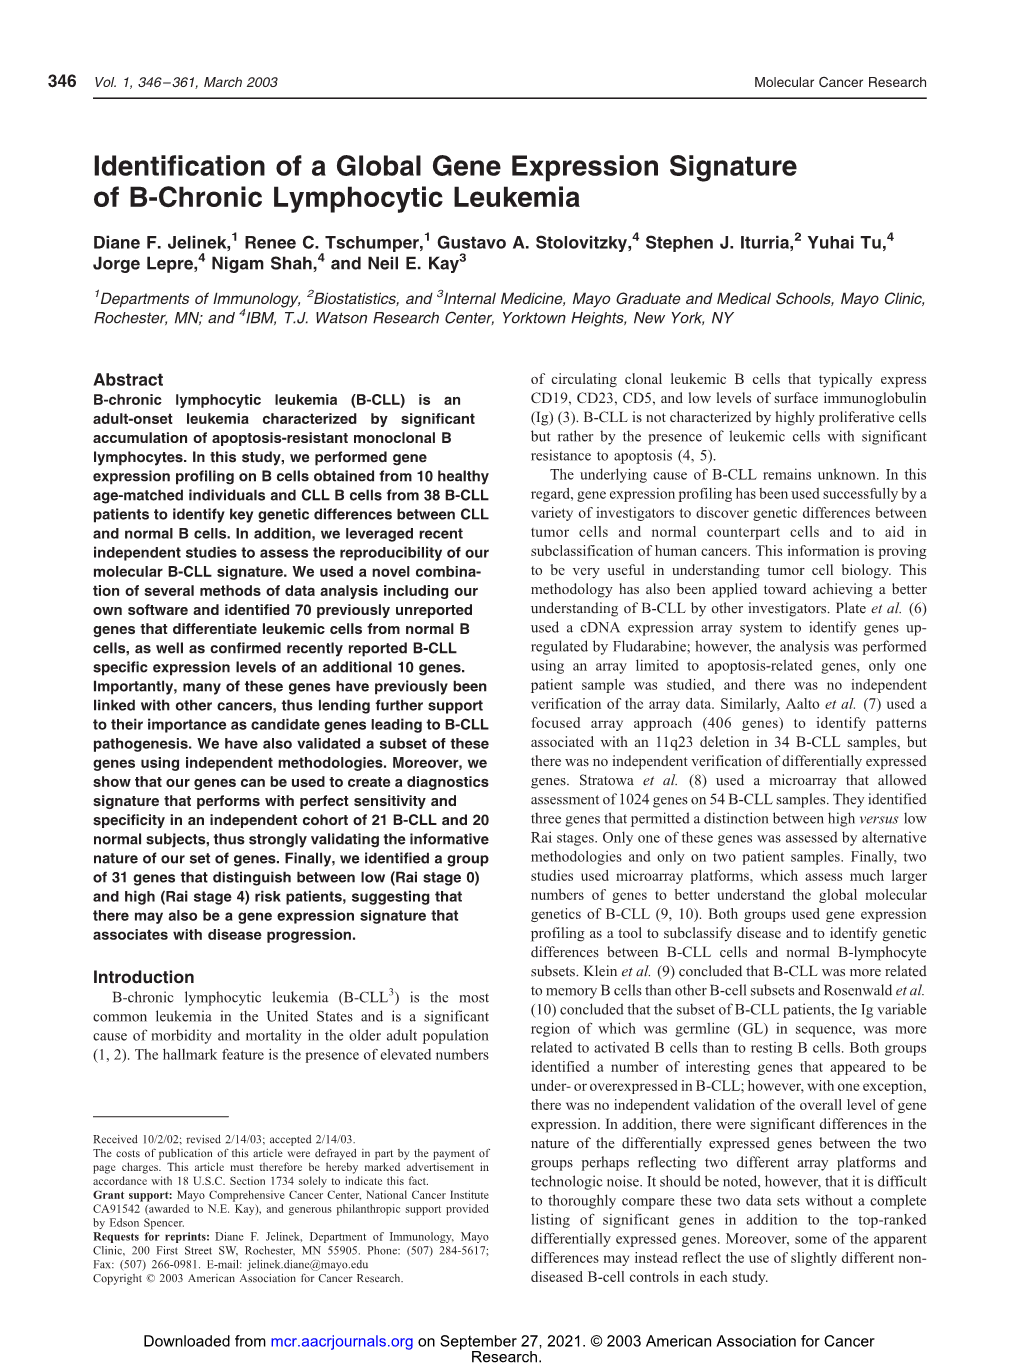 Identification of a Global Gene Expression Signature of B-Chronic Lymphocytic Leukemia